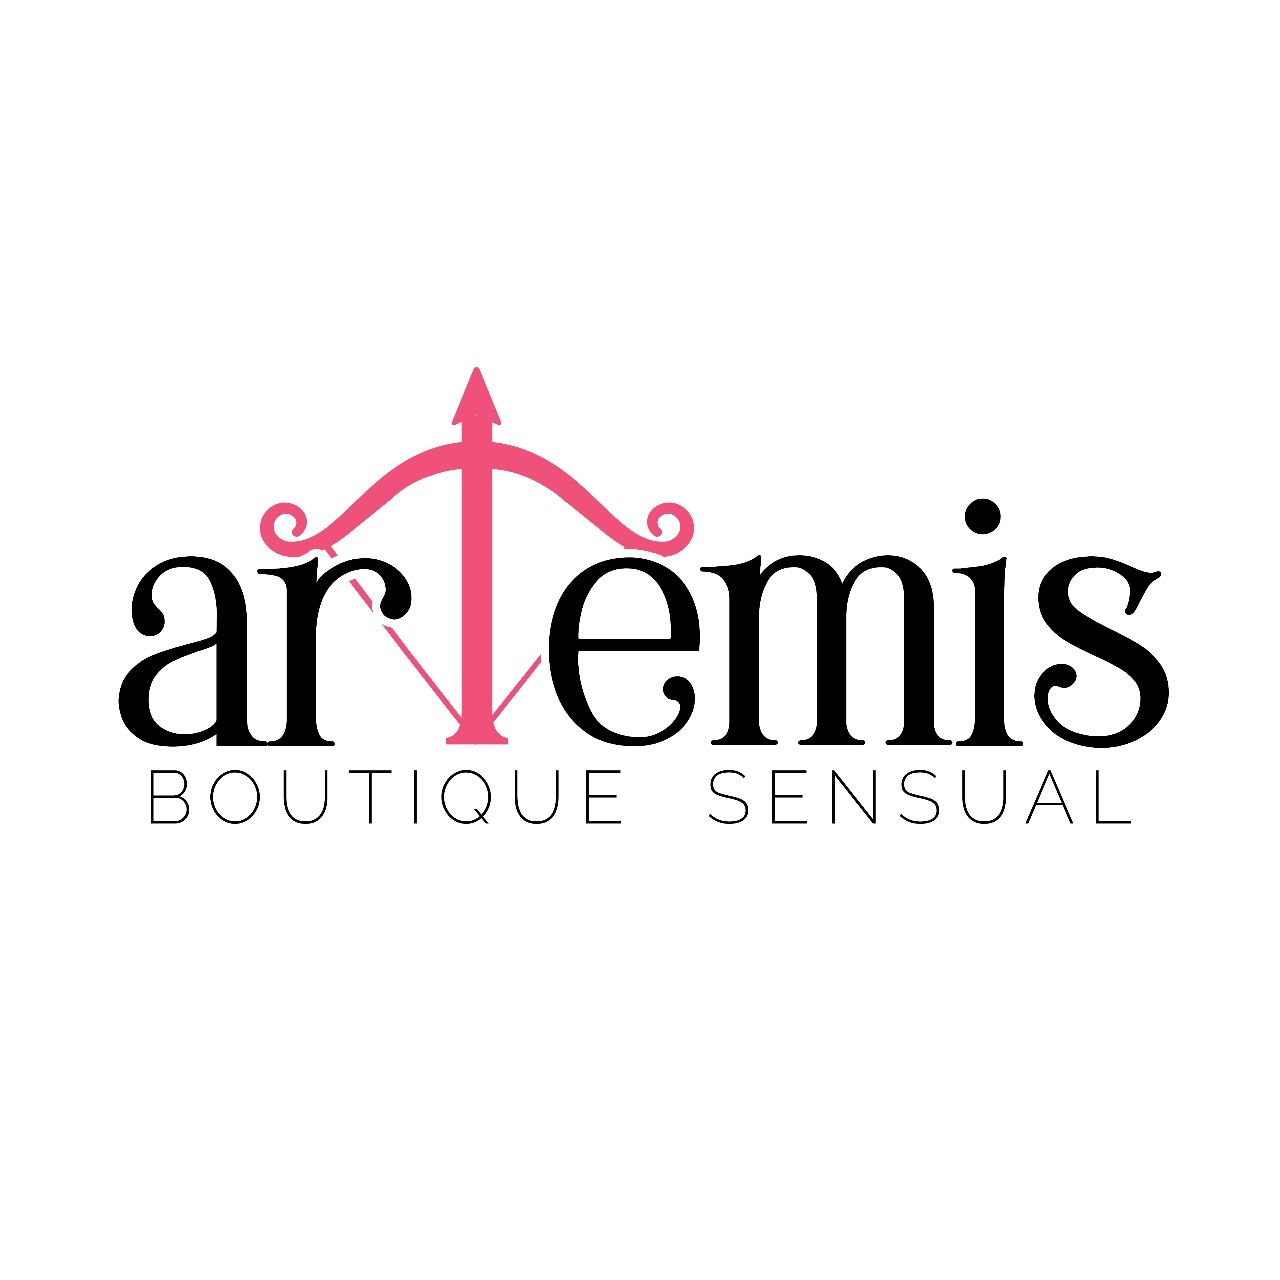 Artemis Boutique Sensual